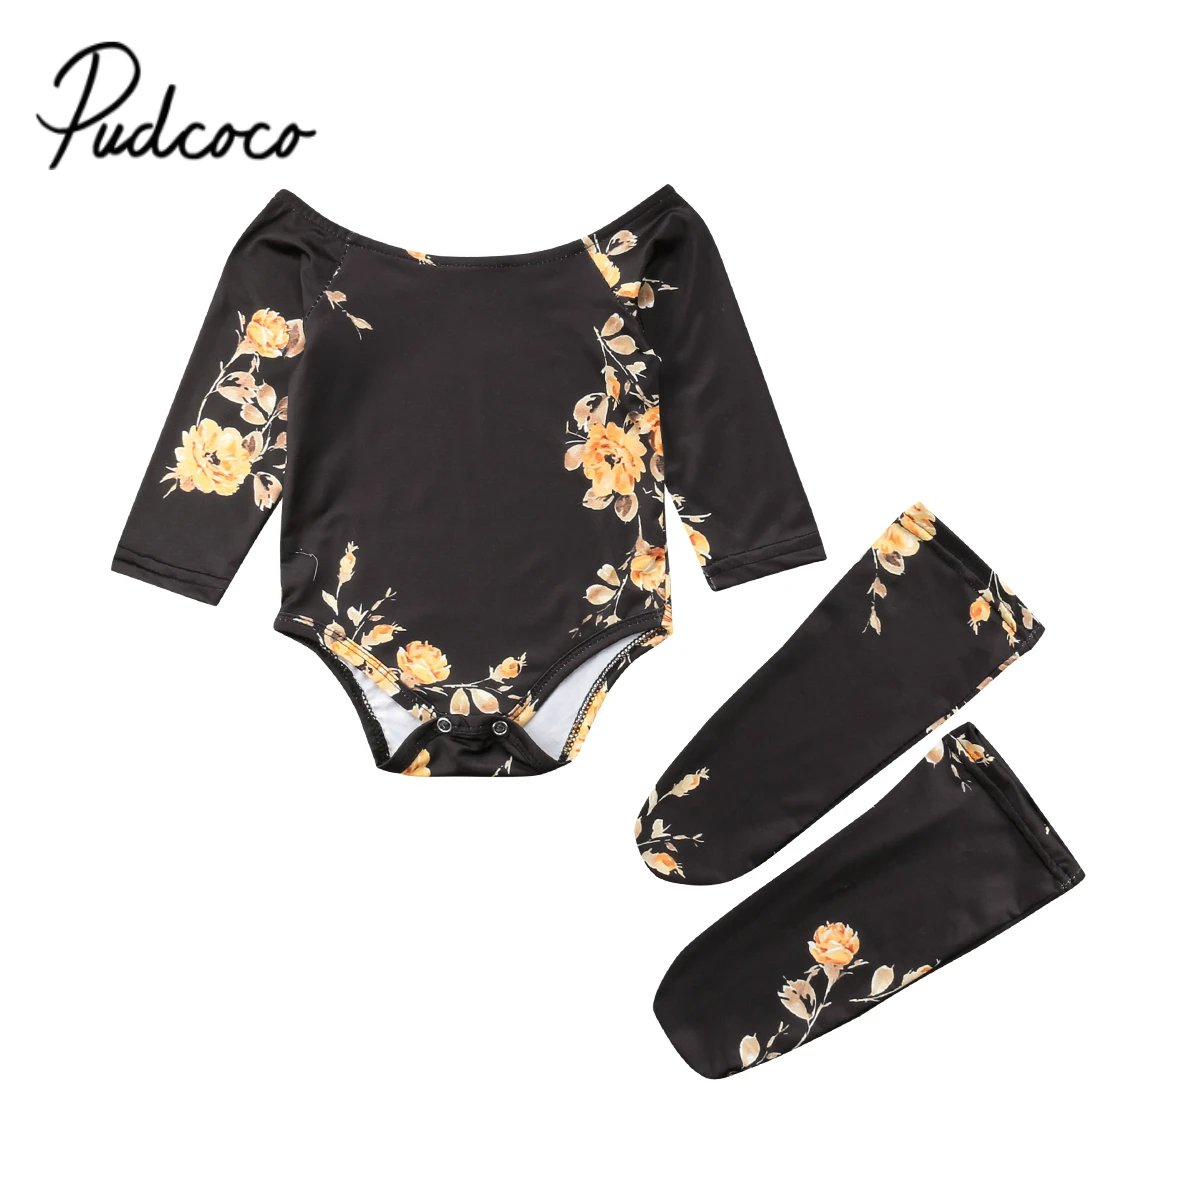 Pudcoco/Коллекция 2019 года, осенняя одежда для маленьких девочек Женский наряд для новорожденных, 3 предмета, носки с цветочным рисунком +